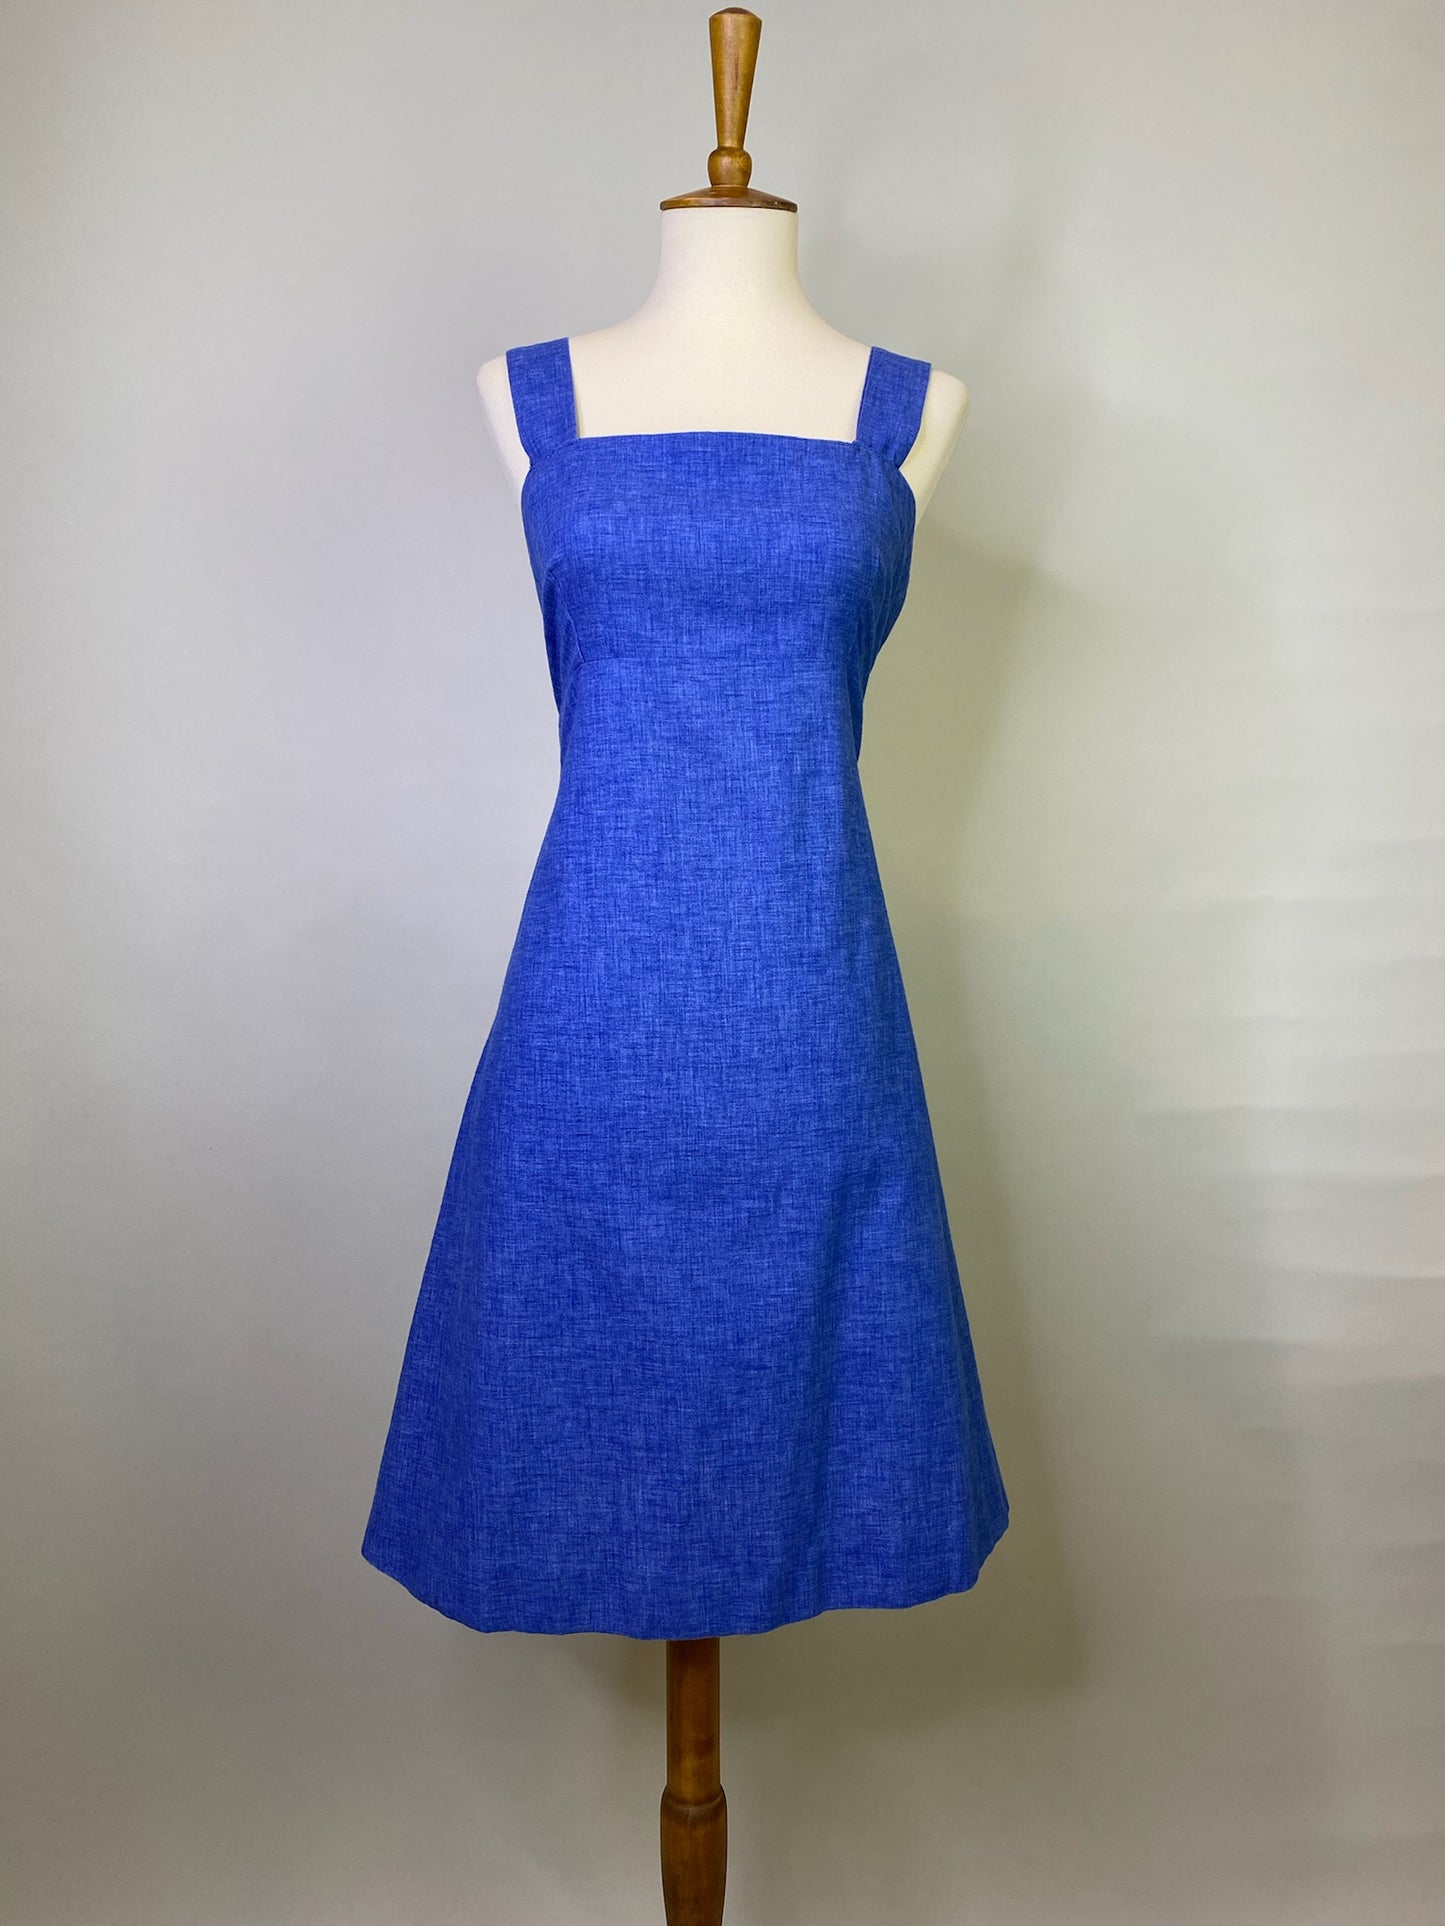 Cora Dress, 1960’s, 36” Bust 32” Waist